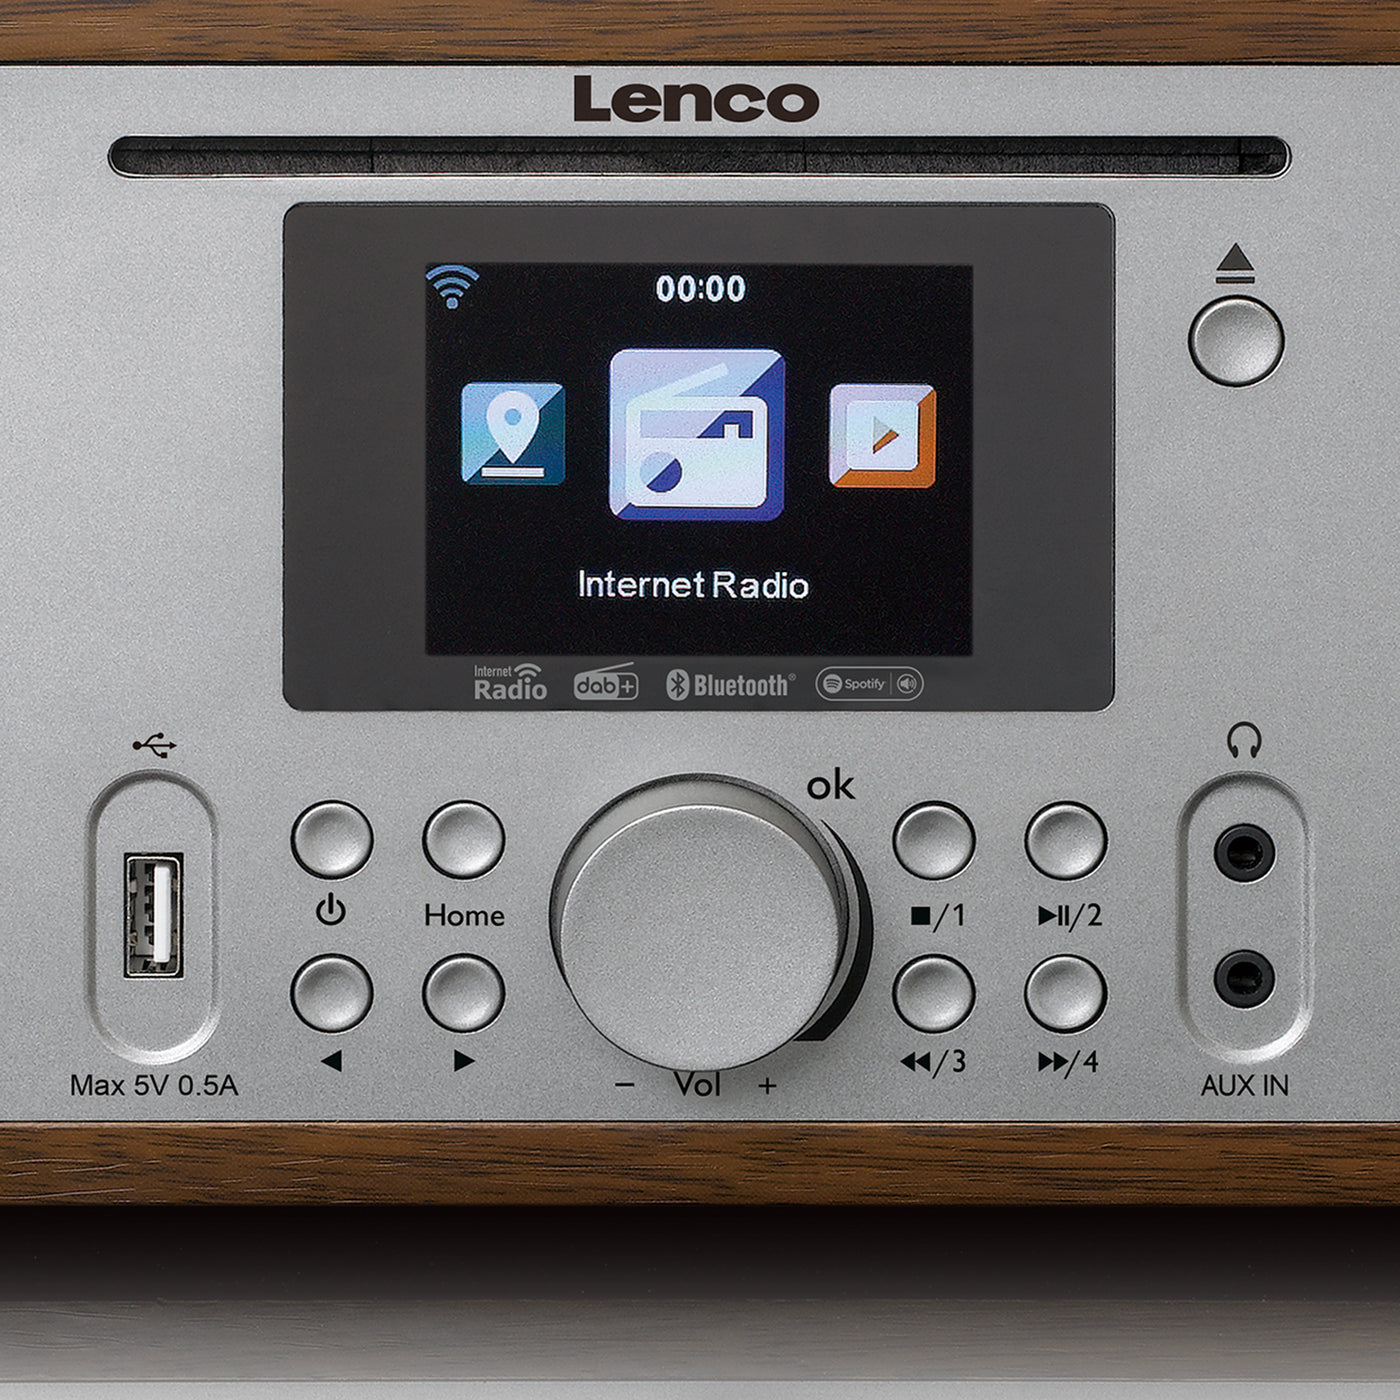 LENCO DIR-270WD - Radio with Internet, DAB, FM radio/ CD/BT